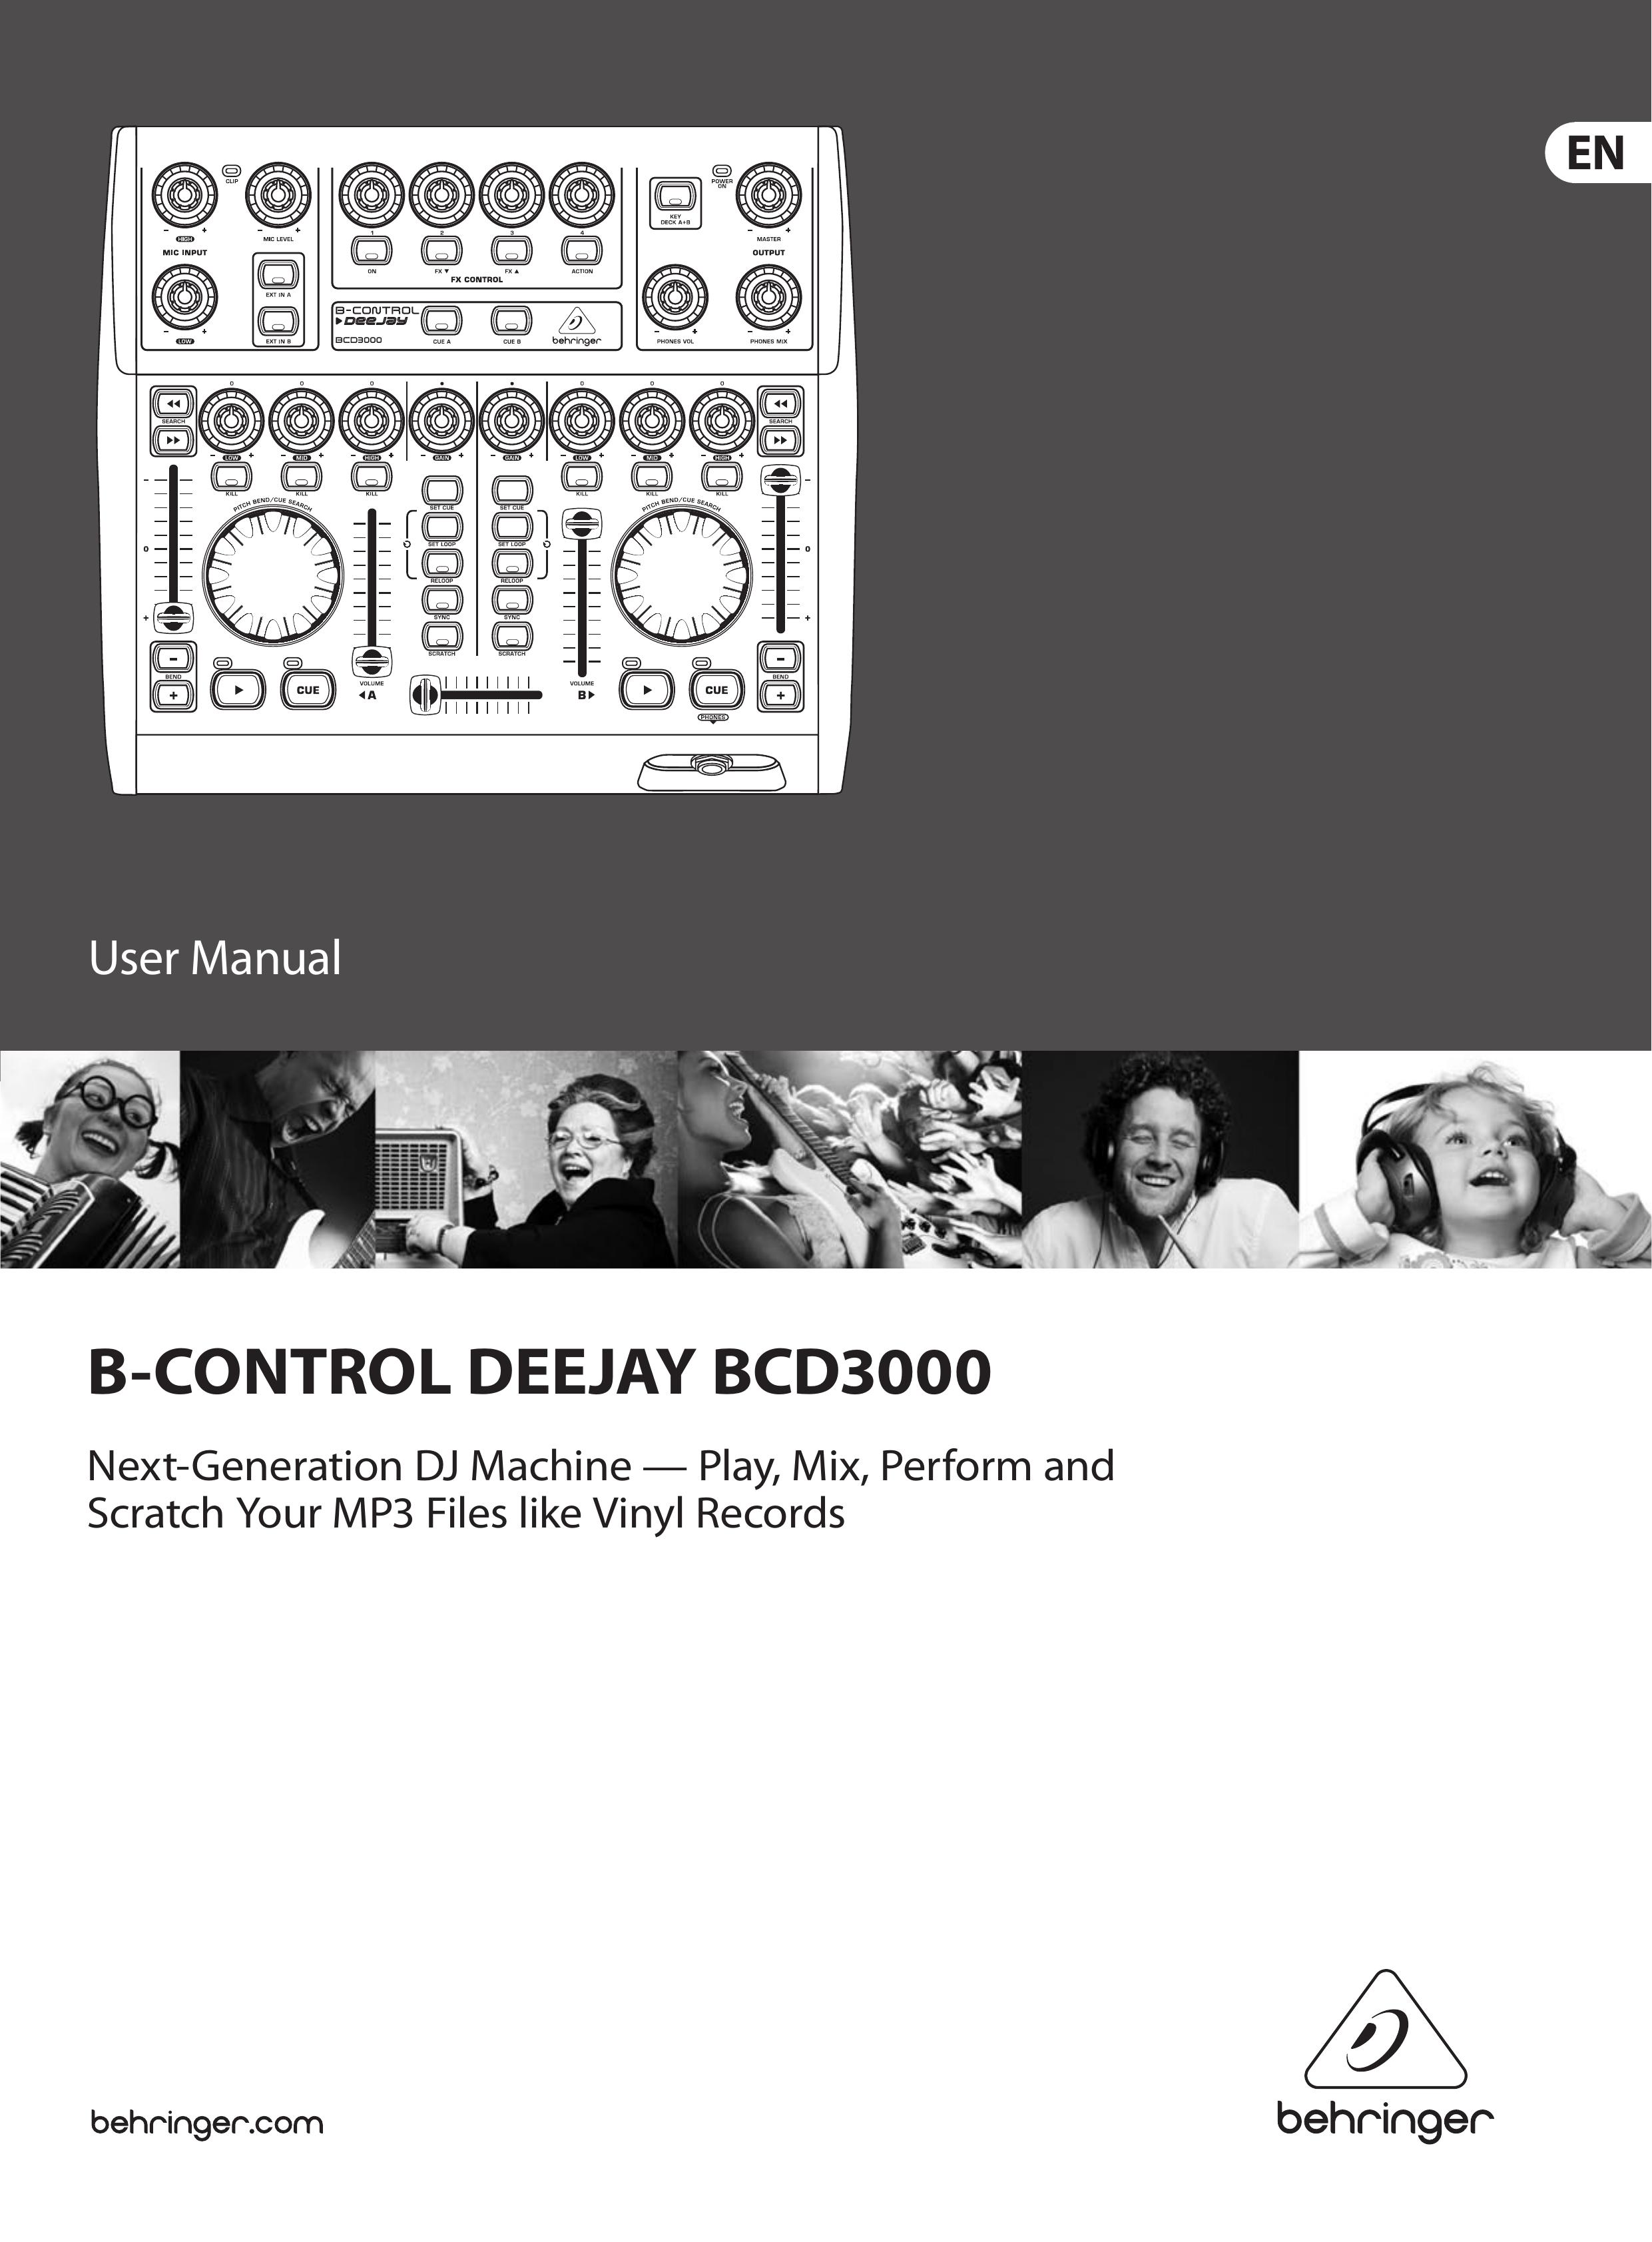 Behringer BCD3000 DJ Equipment User Manual